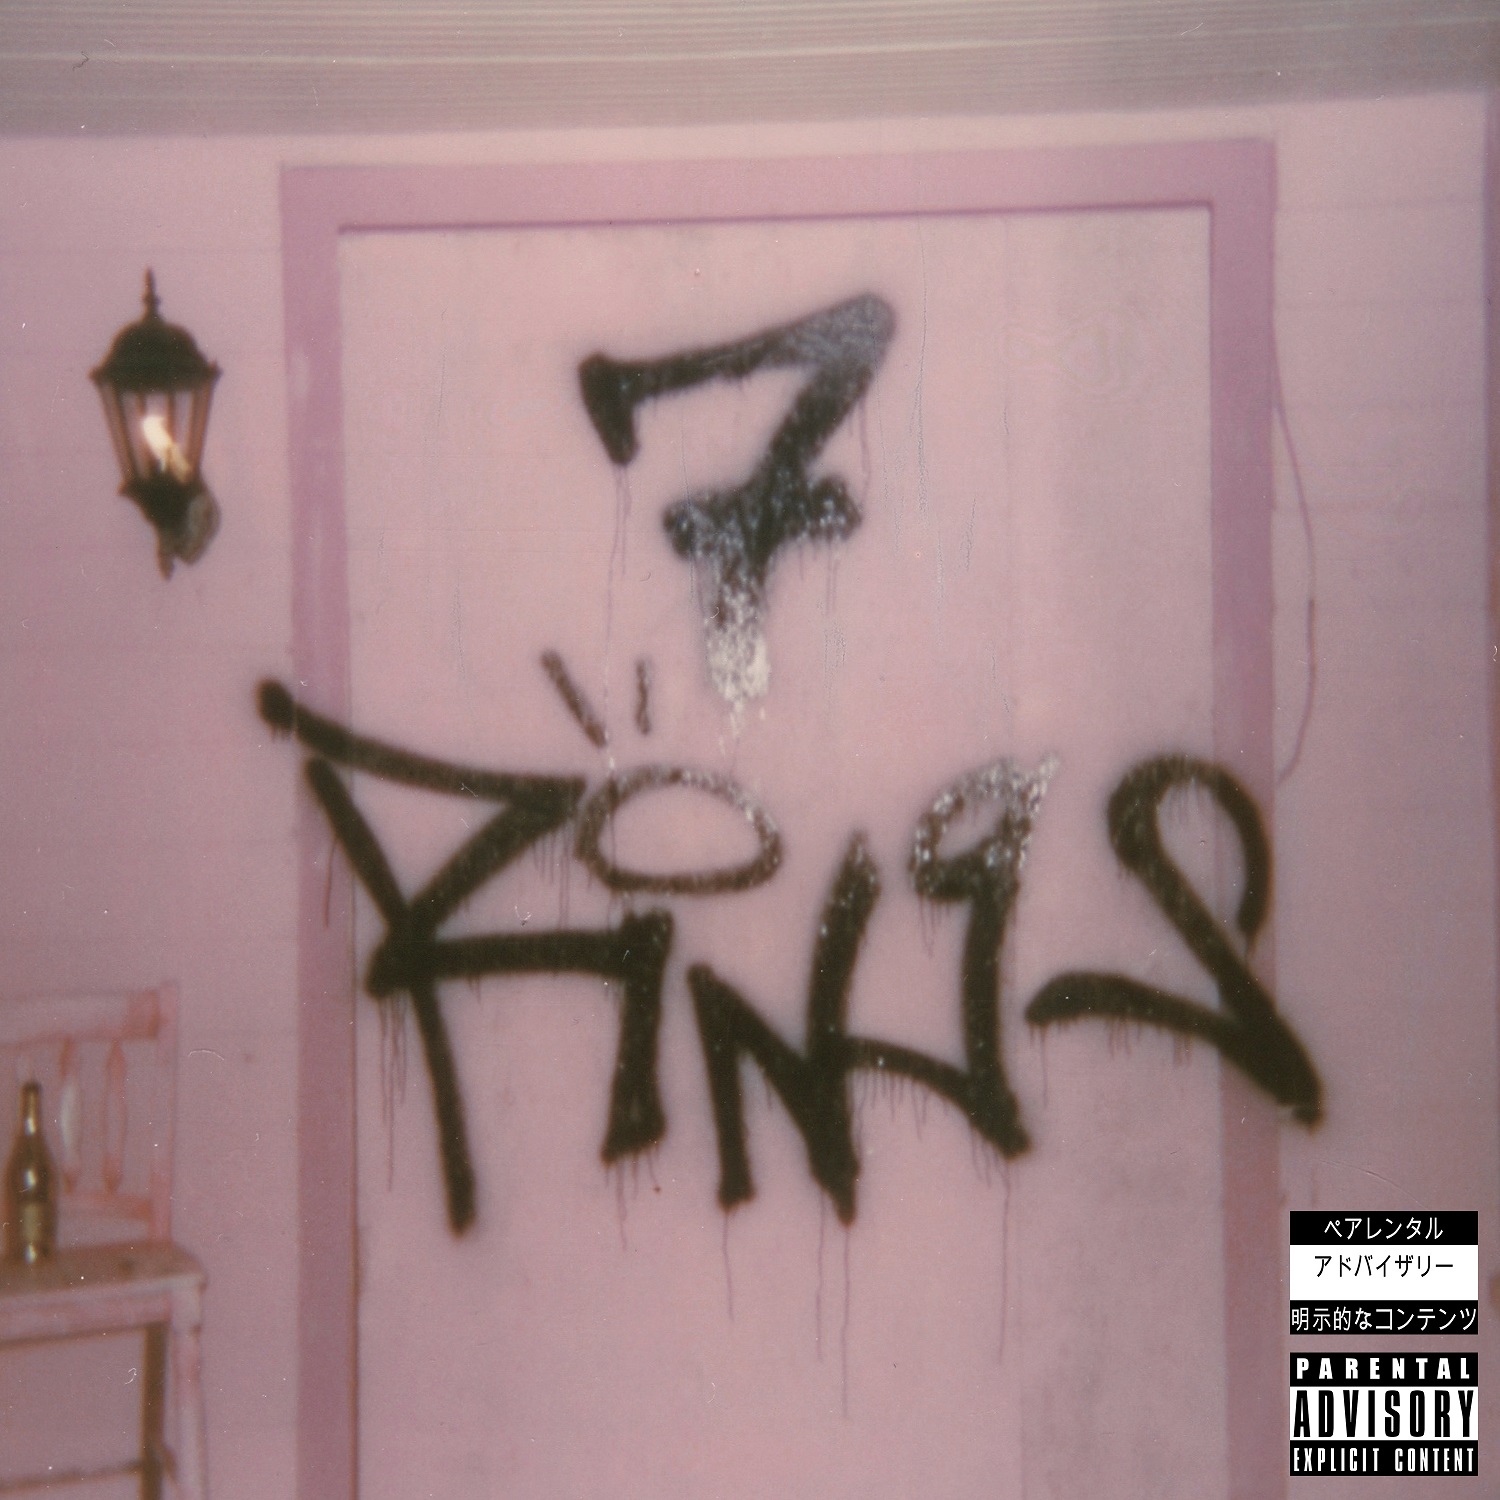 Ariana Grande - 7 rings cover